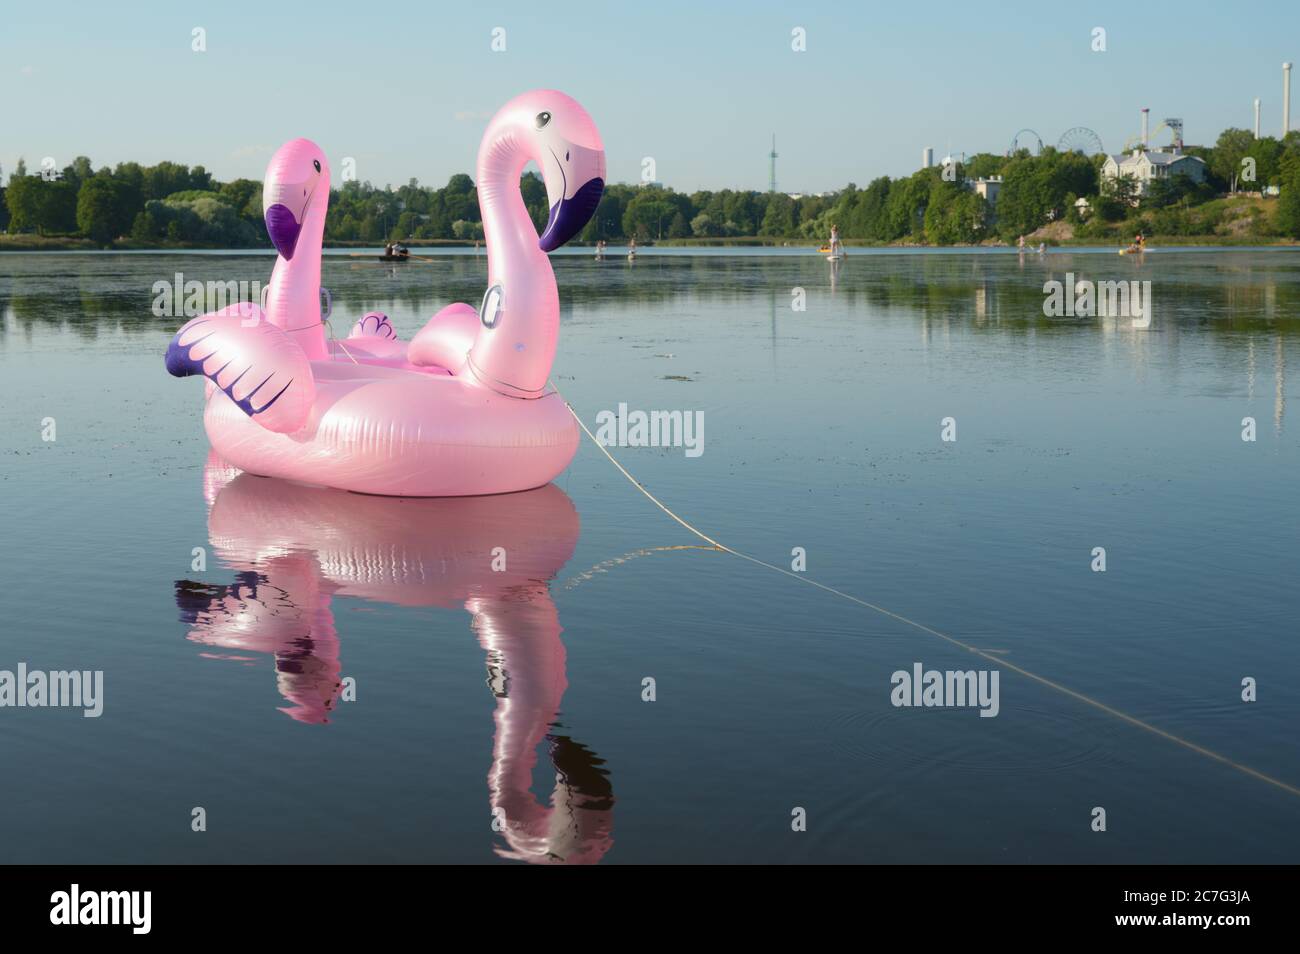 Pinkfarbener aufblasbarer Spielzeug-Flamingo auf dem See im Zentrum von Helsinki, Finnland Stockfoto